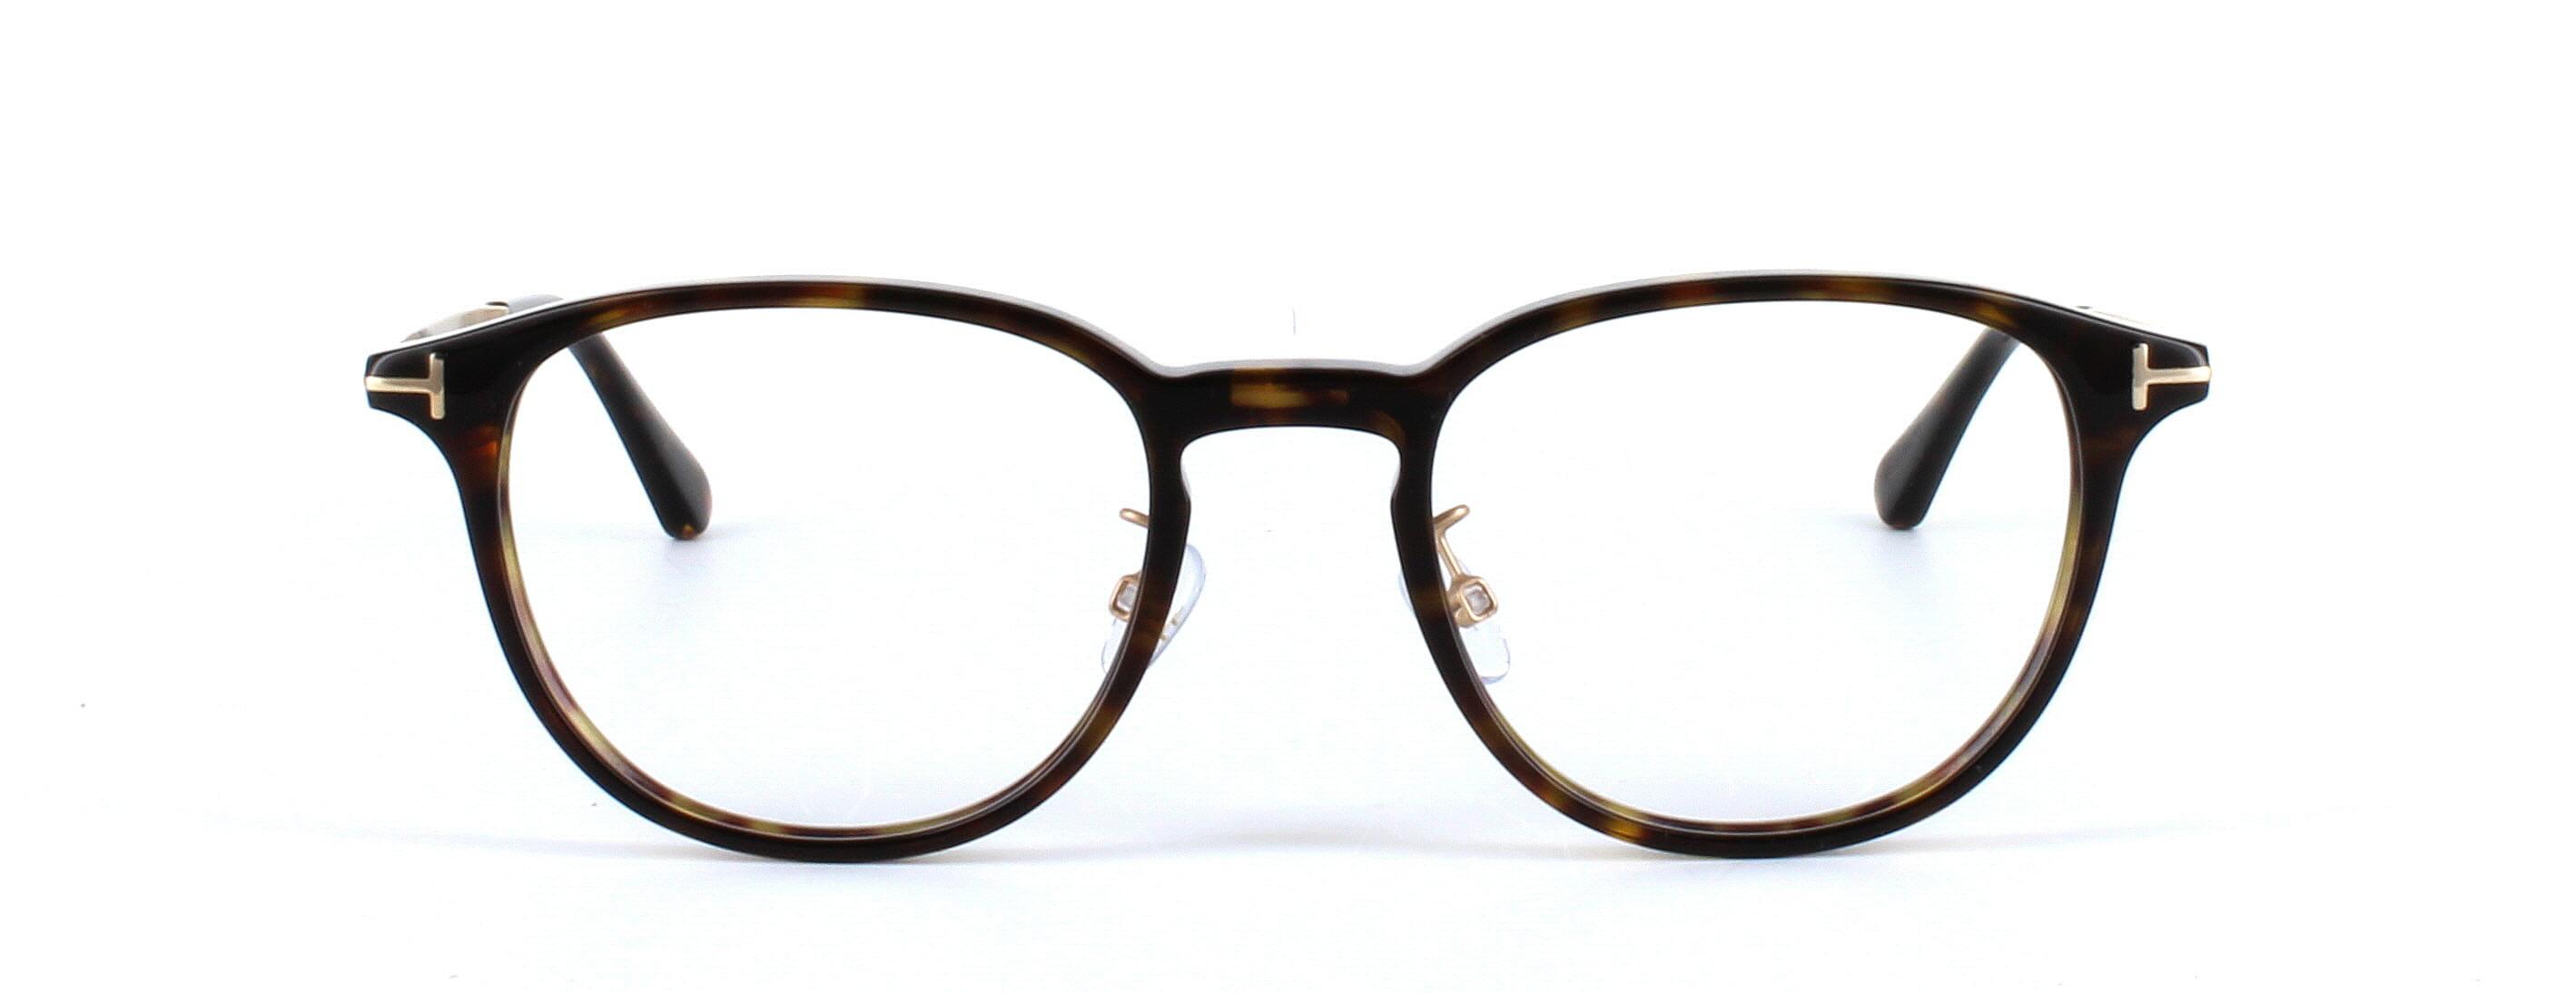 Tom Ford Glasses FT5593 - Tortoise - Image 5